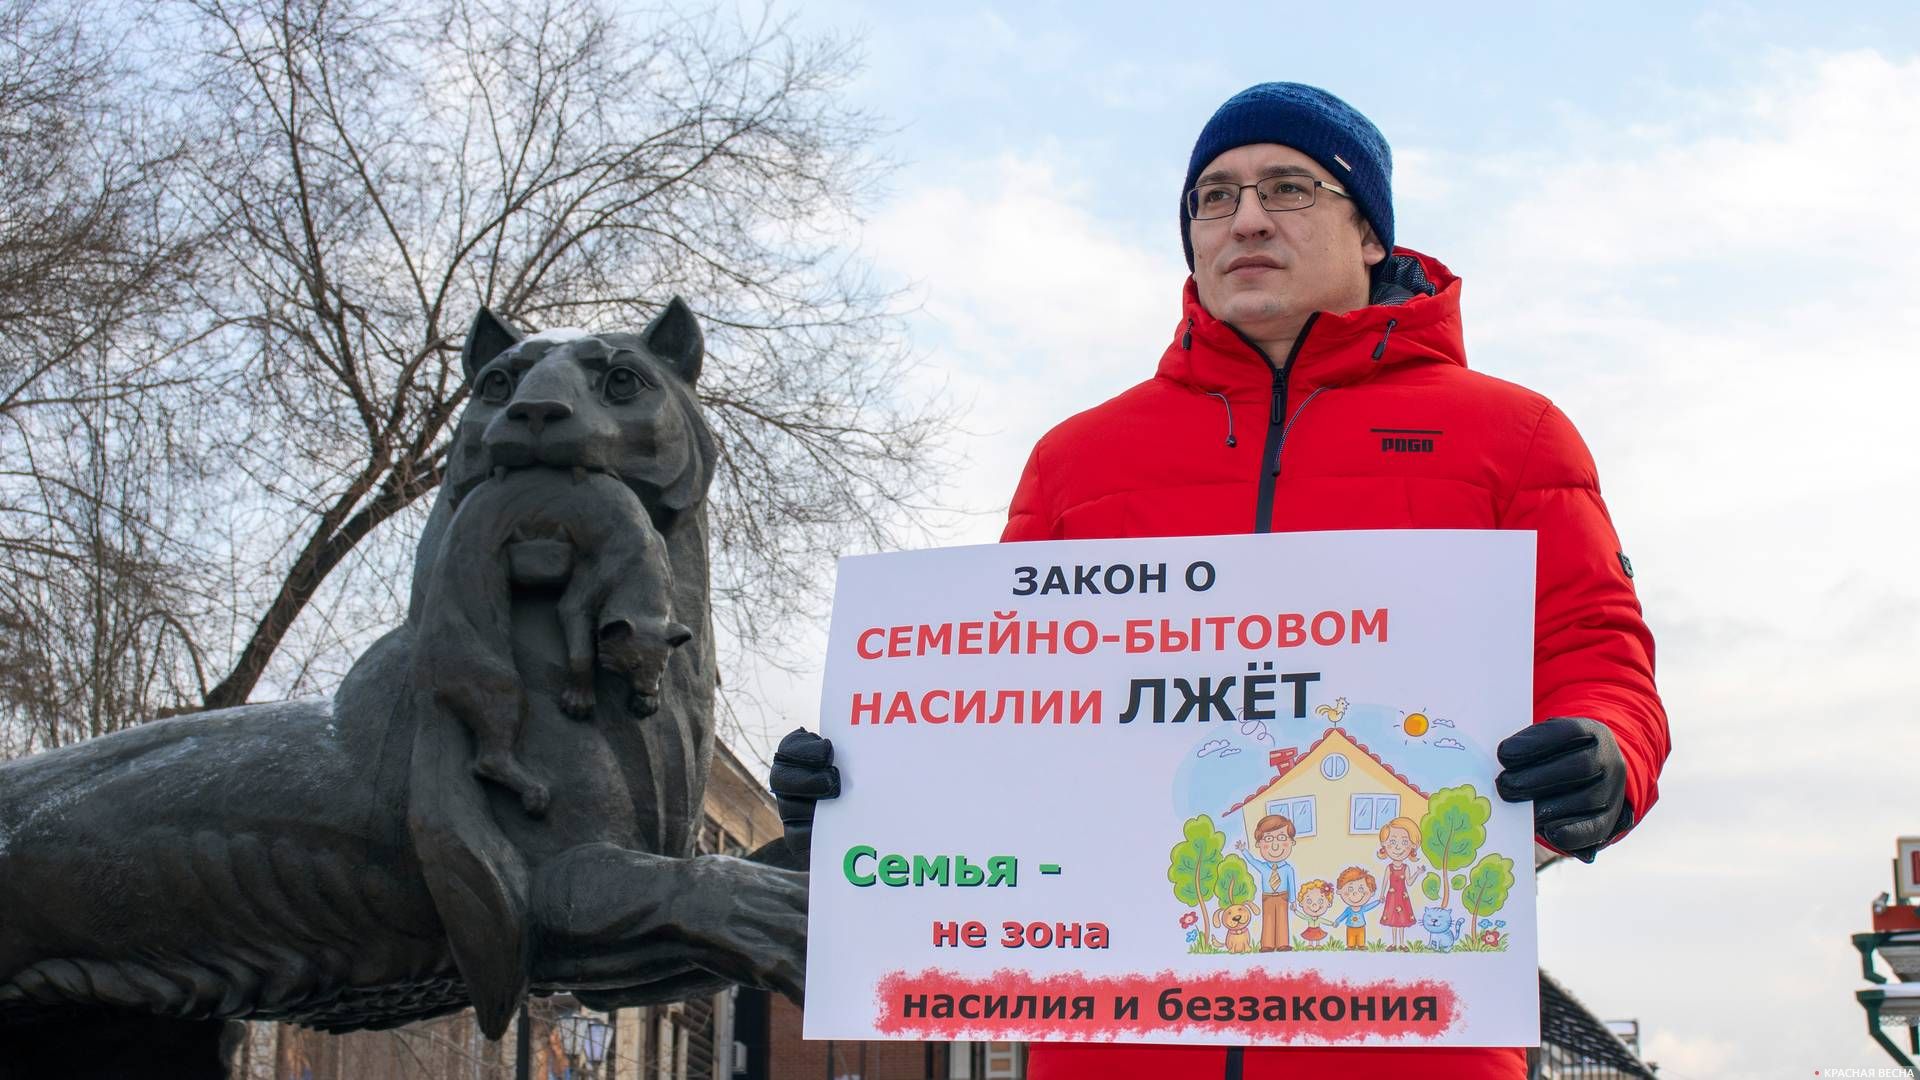 Иркутск. Пикет против закона о семейном насилии 15.12.2019